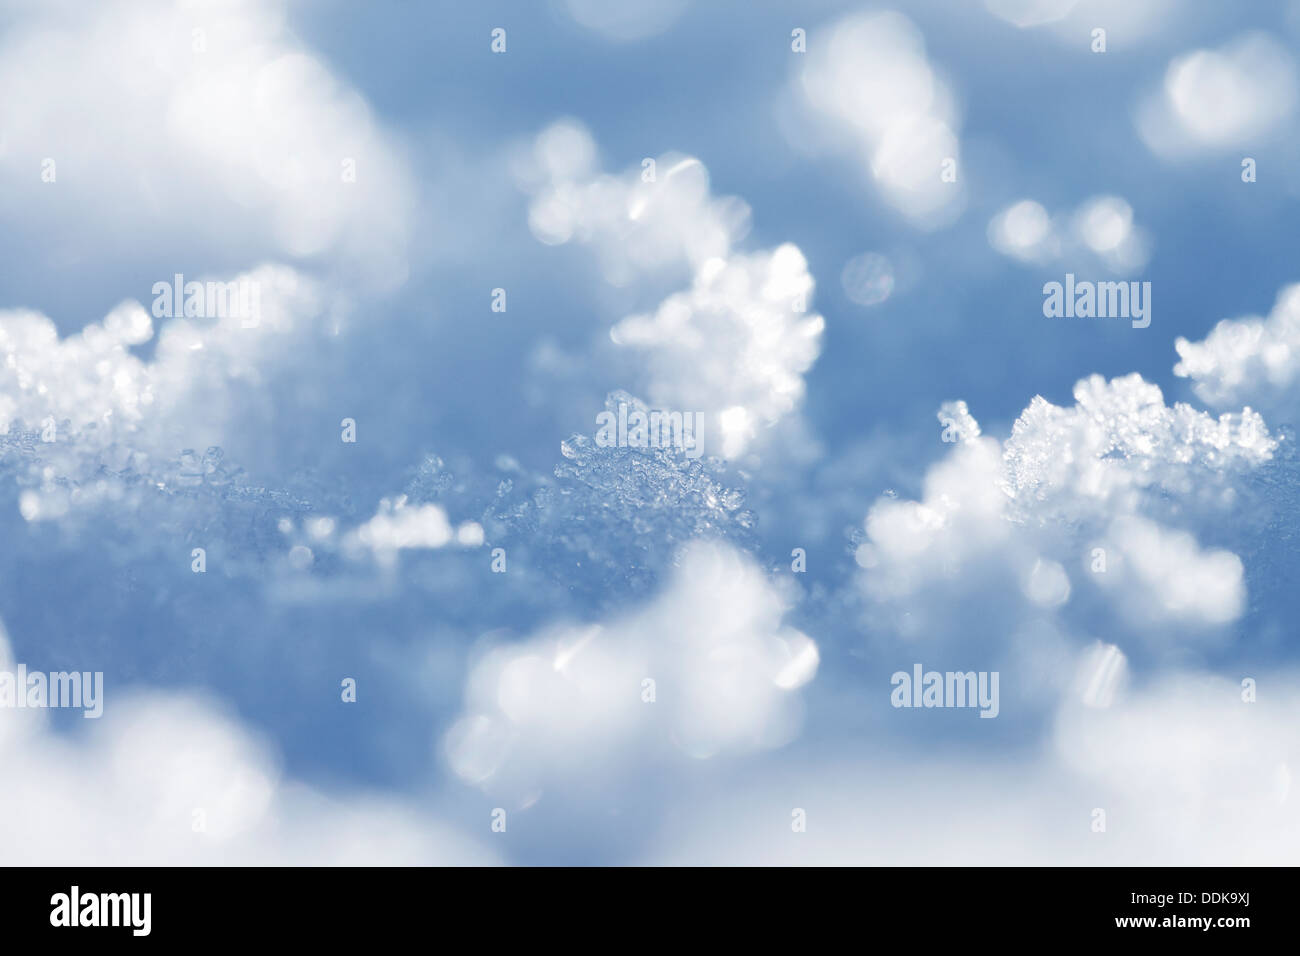 Hintergrundtextur des Schnees in Nahaufnahme. Stockfoto